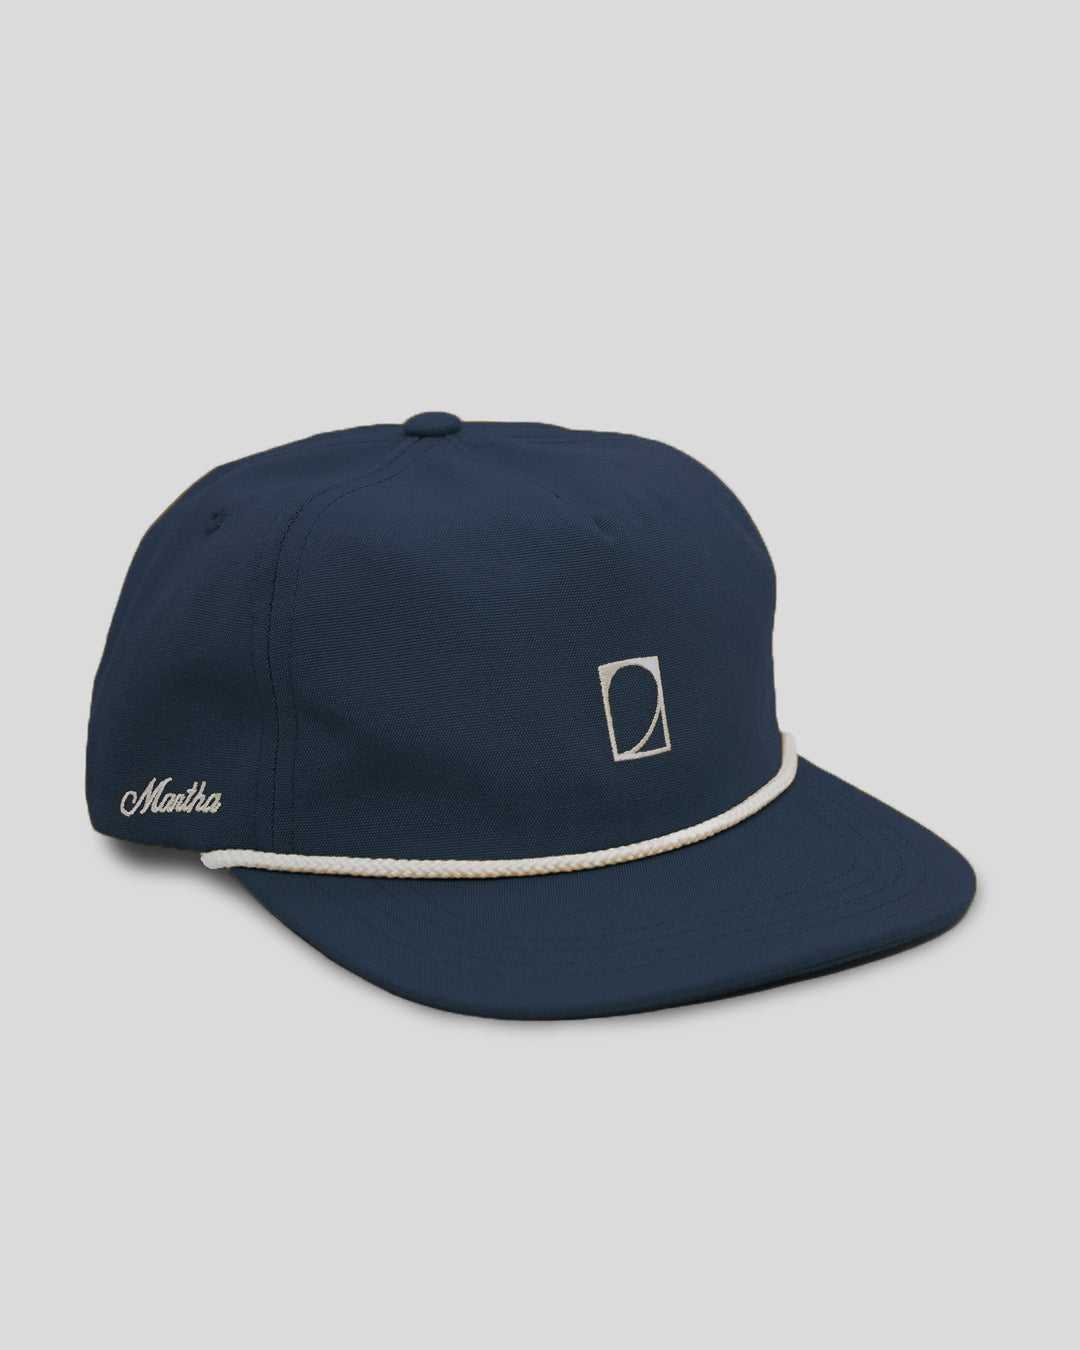 Playa Union Strapback Hat Navy